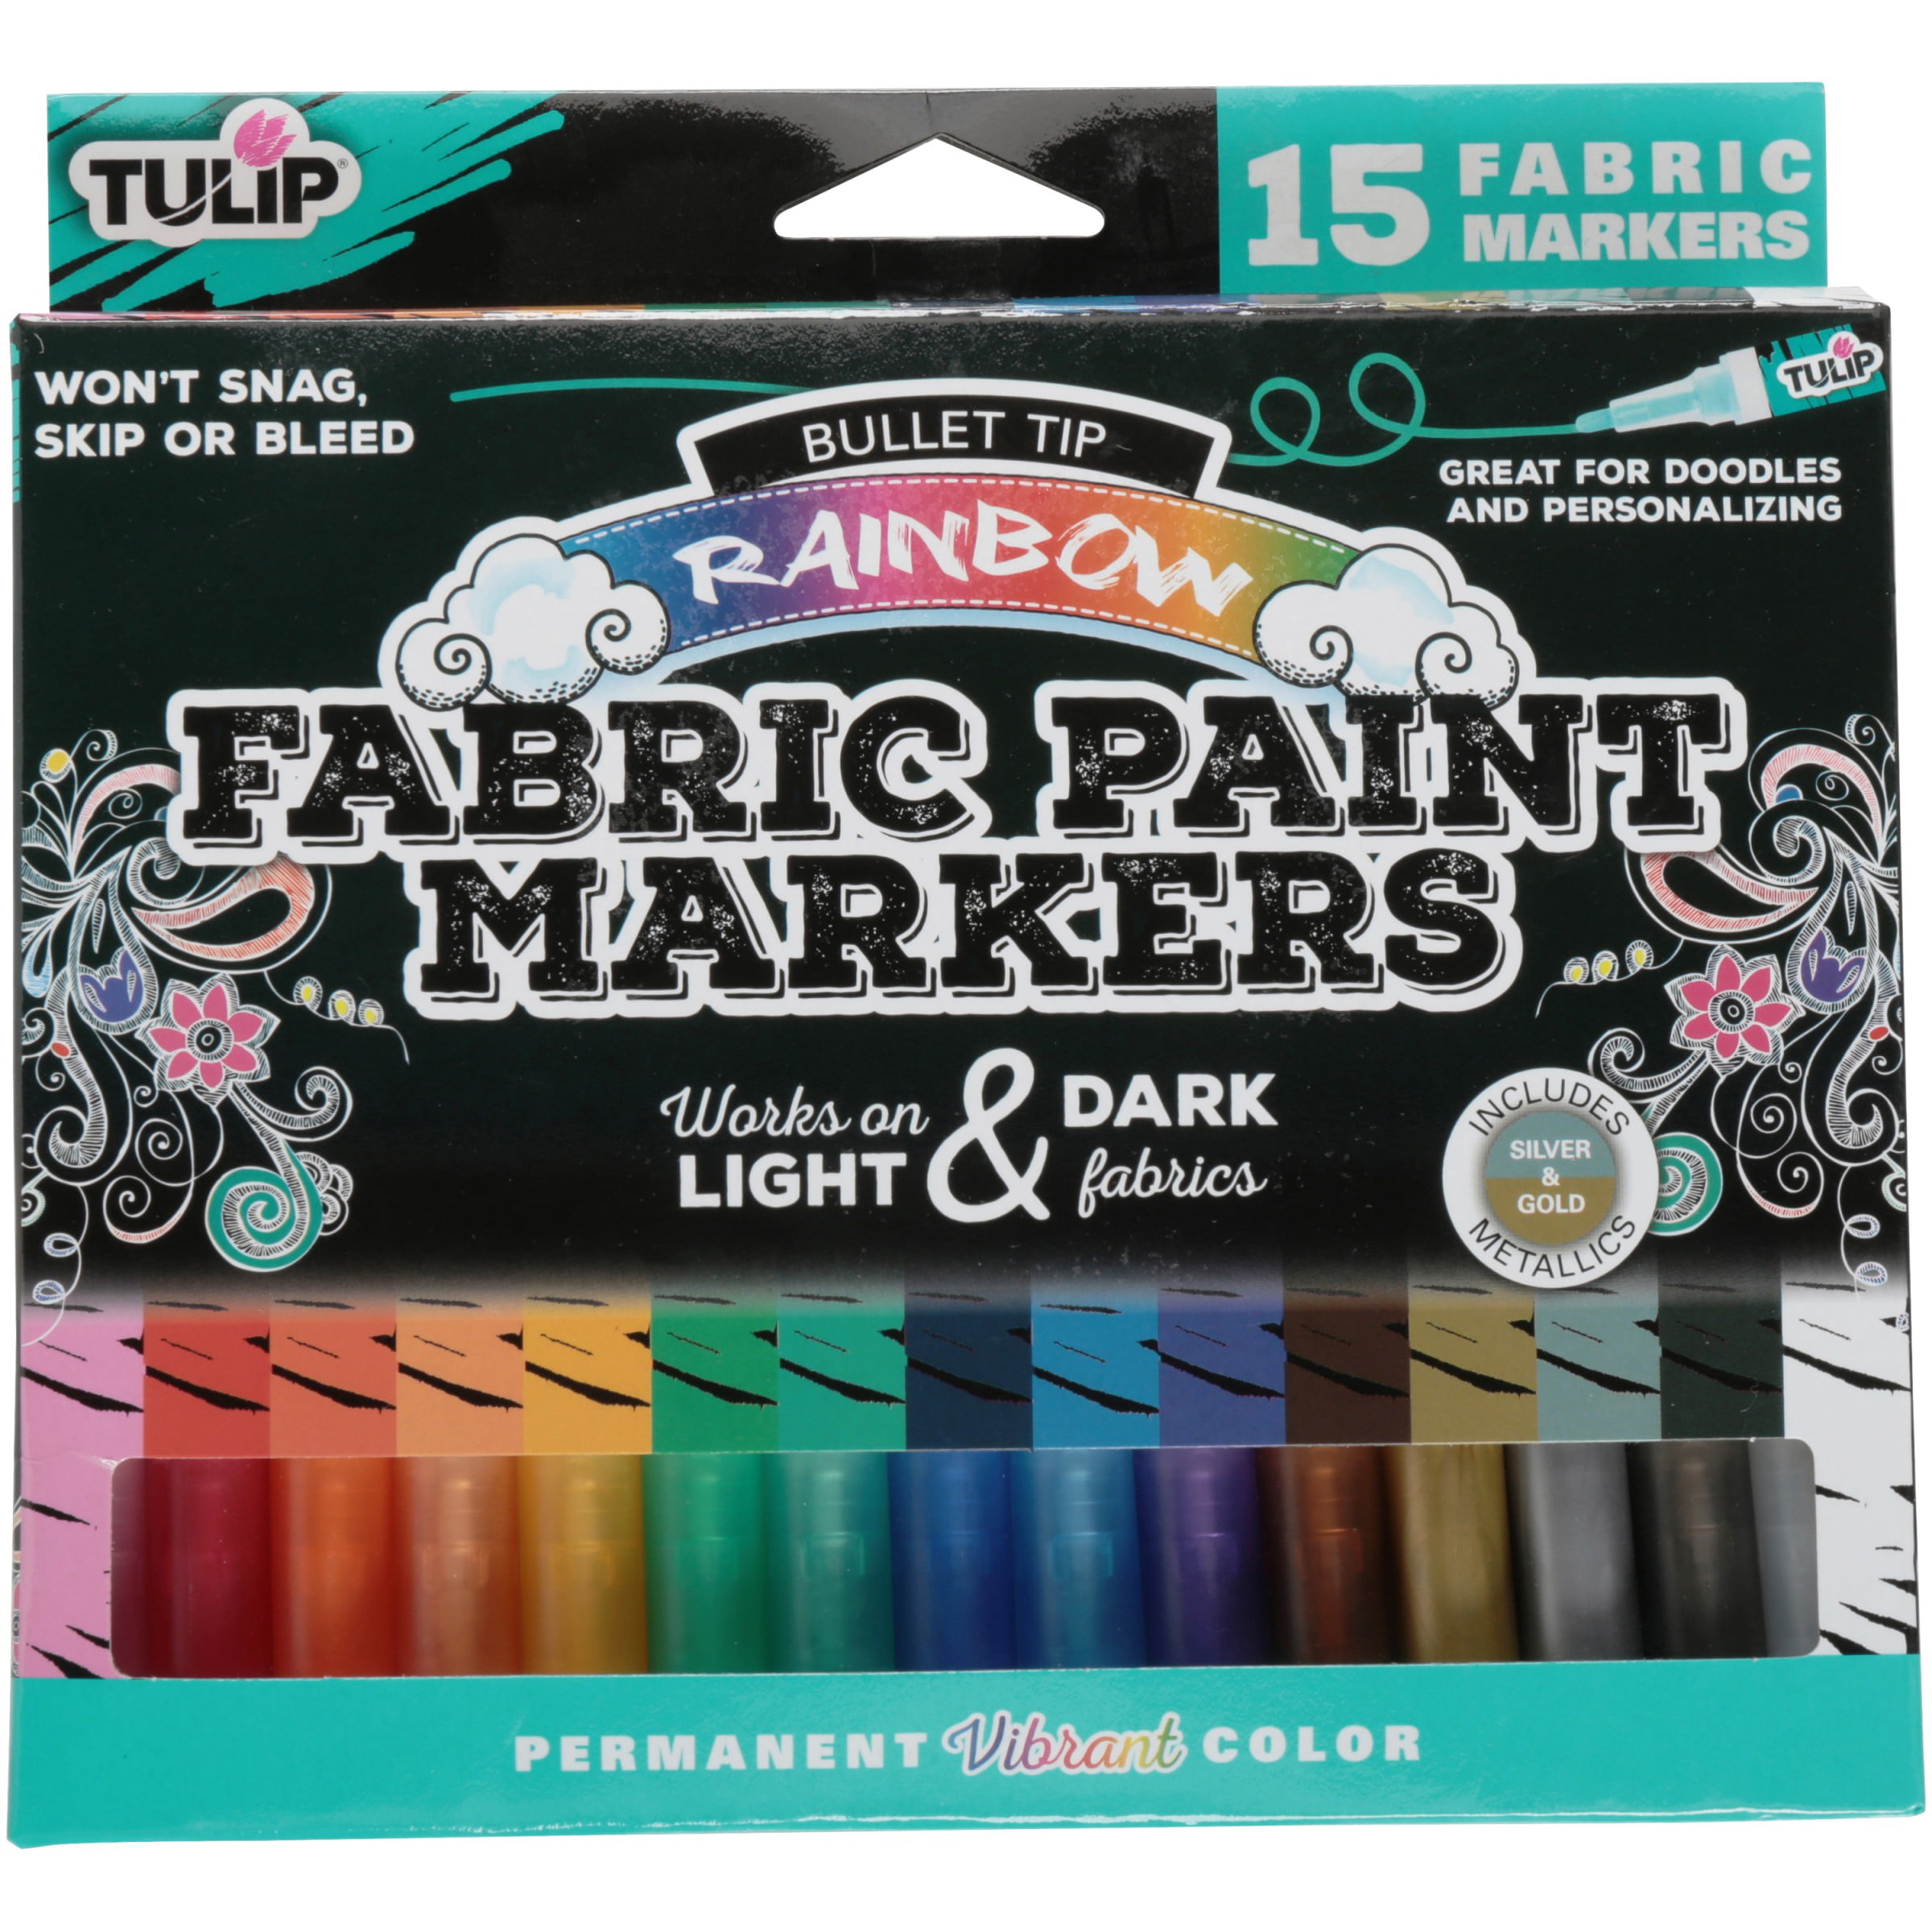 Tulip Graffiti Fabric Markers Bullet Tip, 6 Pack, Rainbow Tulip